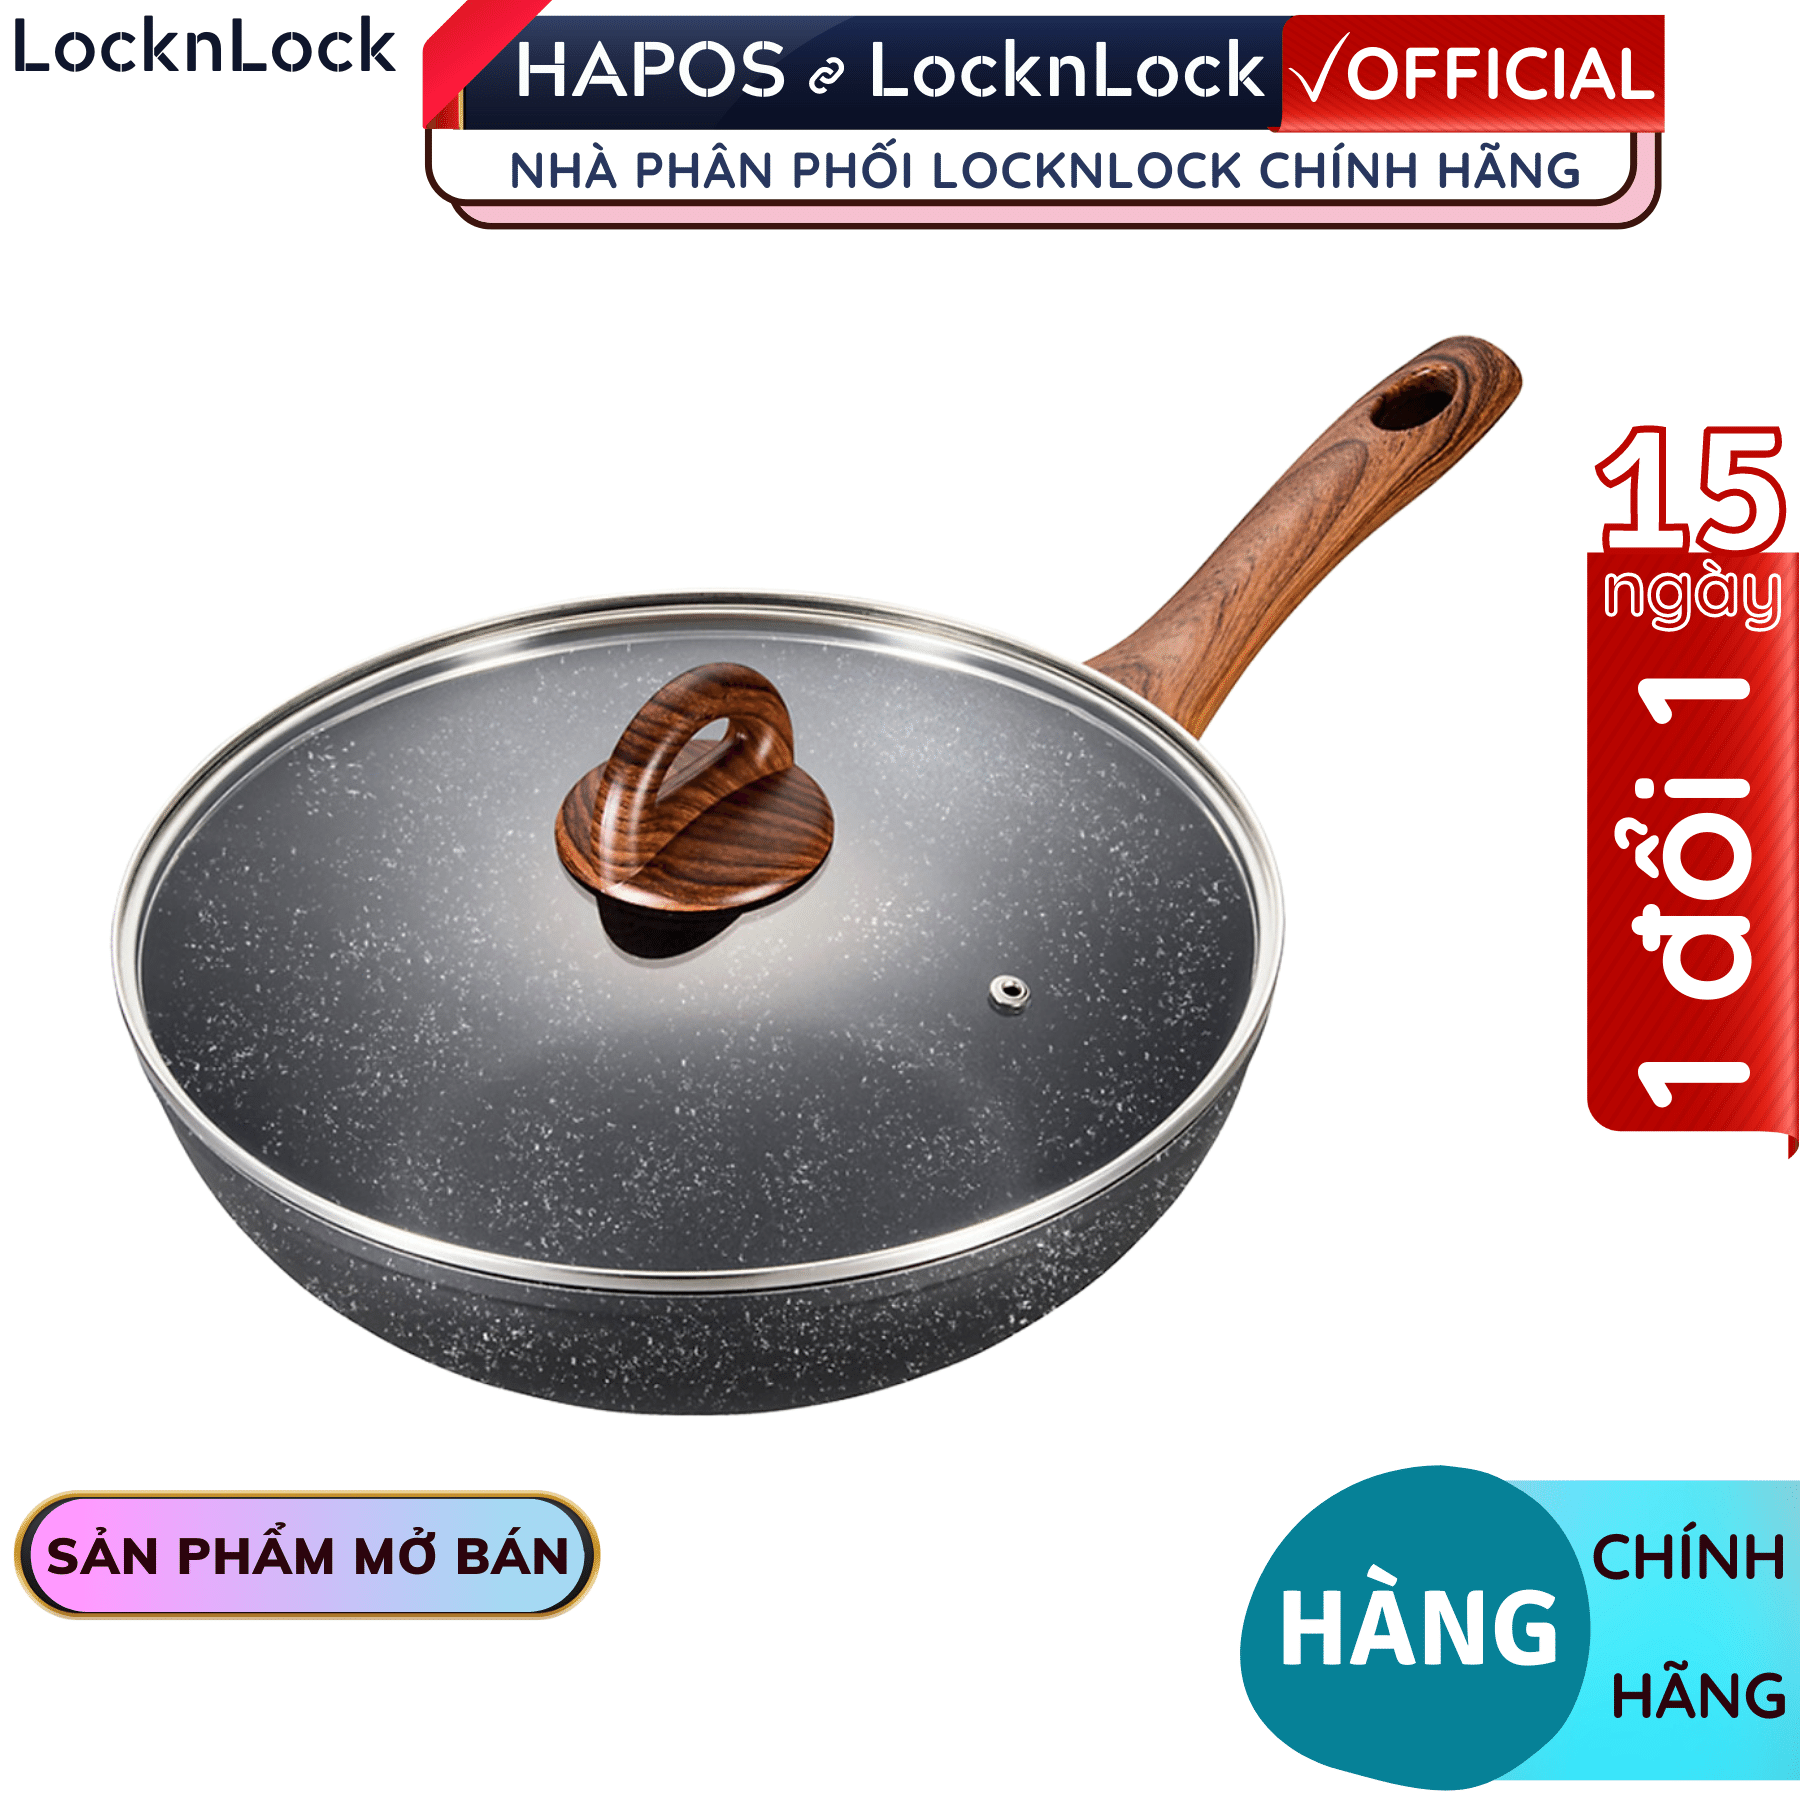 Chảo Lock&Lock sâu lòng chống dính bằng nhôm LBU1285 28cm - Hàng chính hãng, nắp thủy tinh, dùng được bếp từ - Hapos